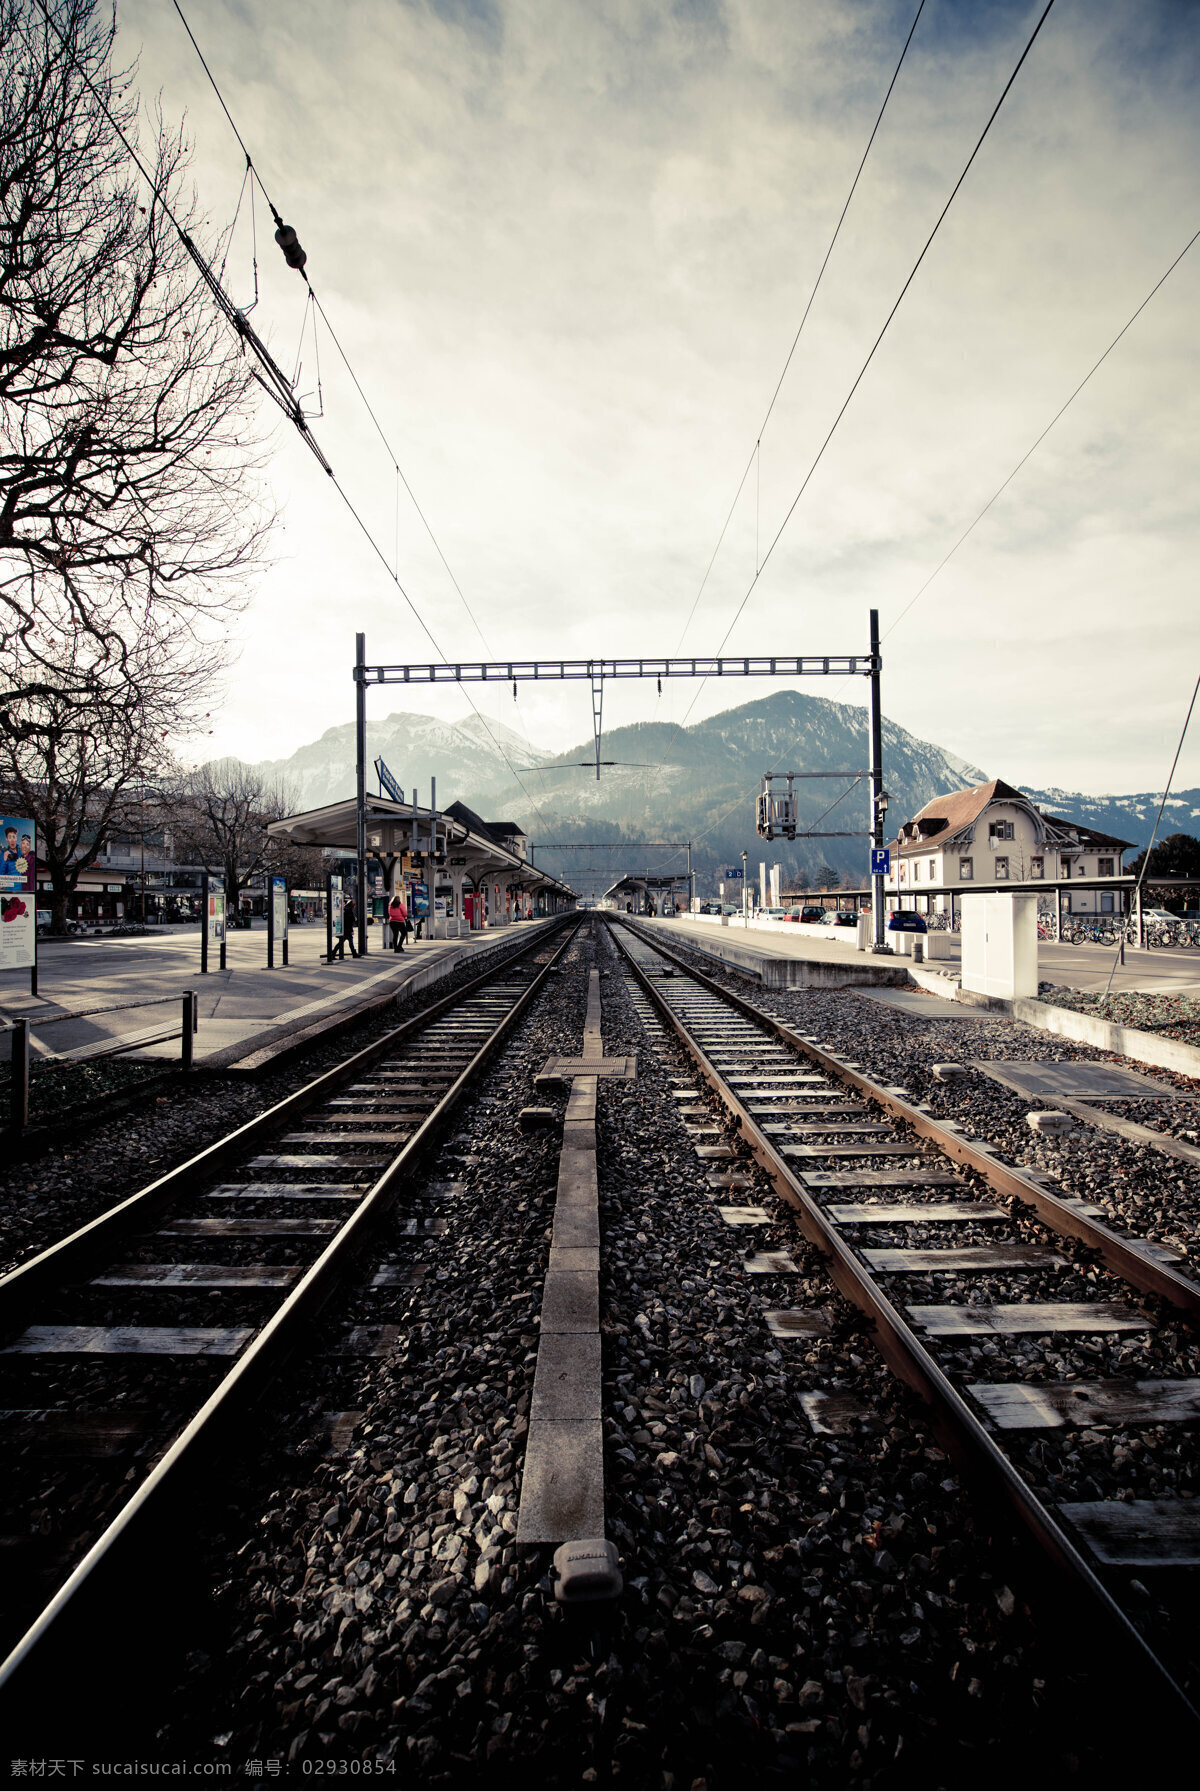 瑞士因特拉肯 瑞士 阿尔卑斯山下 欧洲小镇 火车站 火车道 因特拉肯 国外旅游 旅游摄影